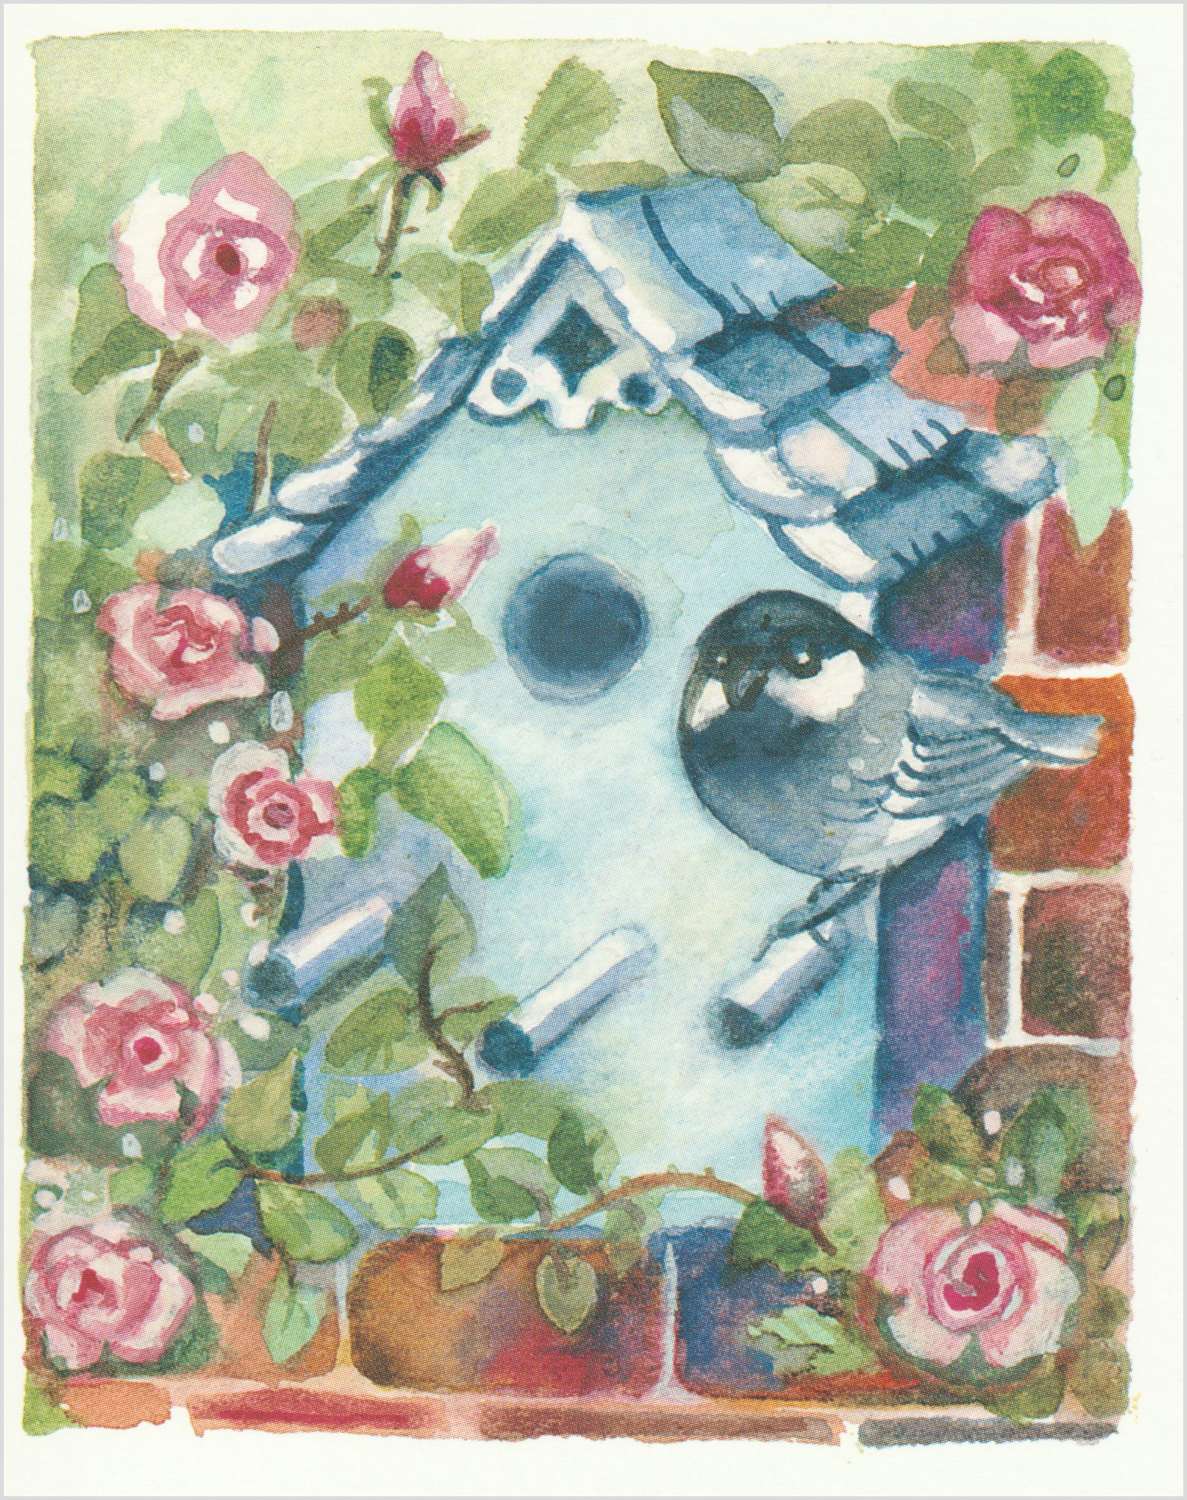 Birdbox & roses